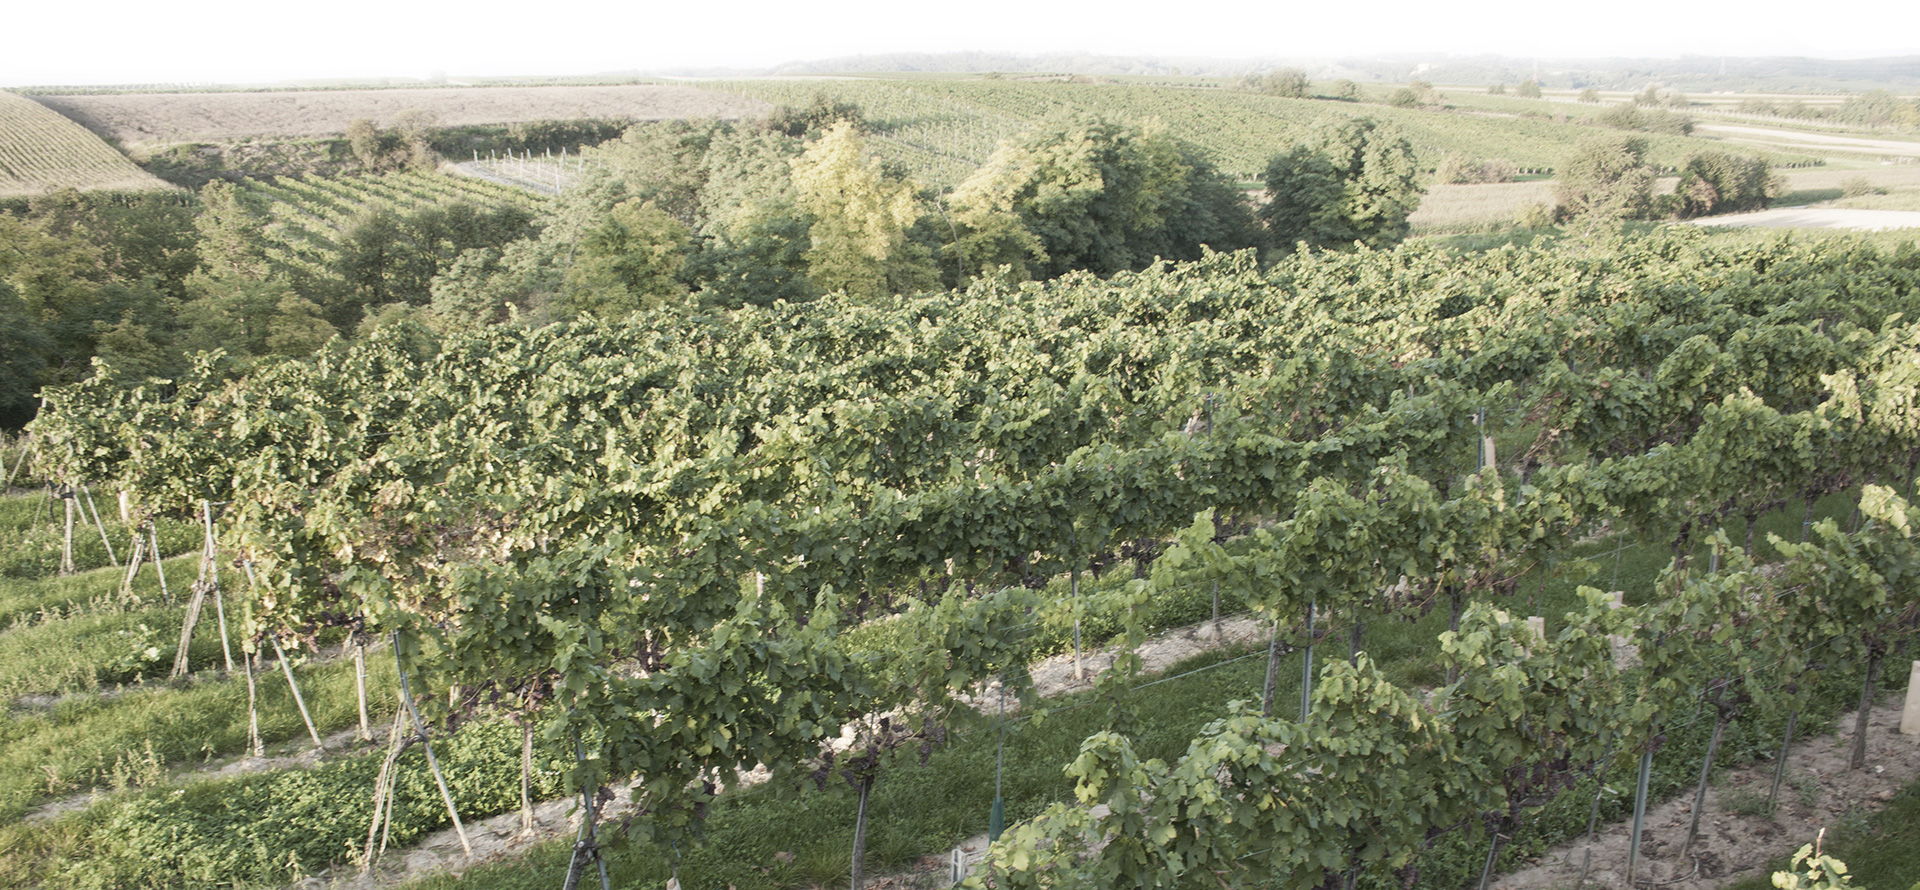 Winery field